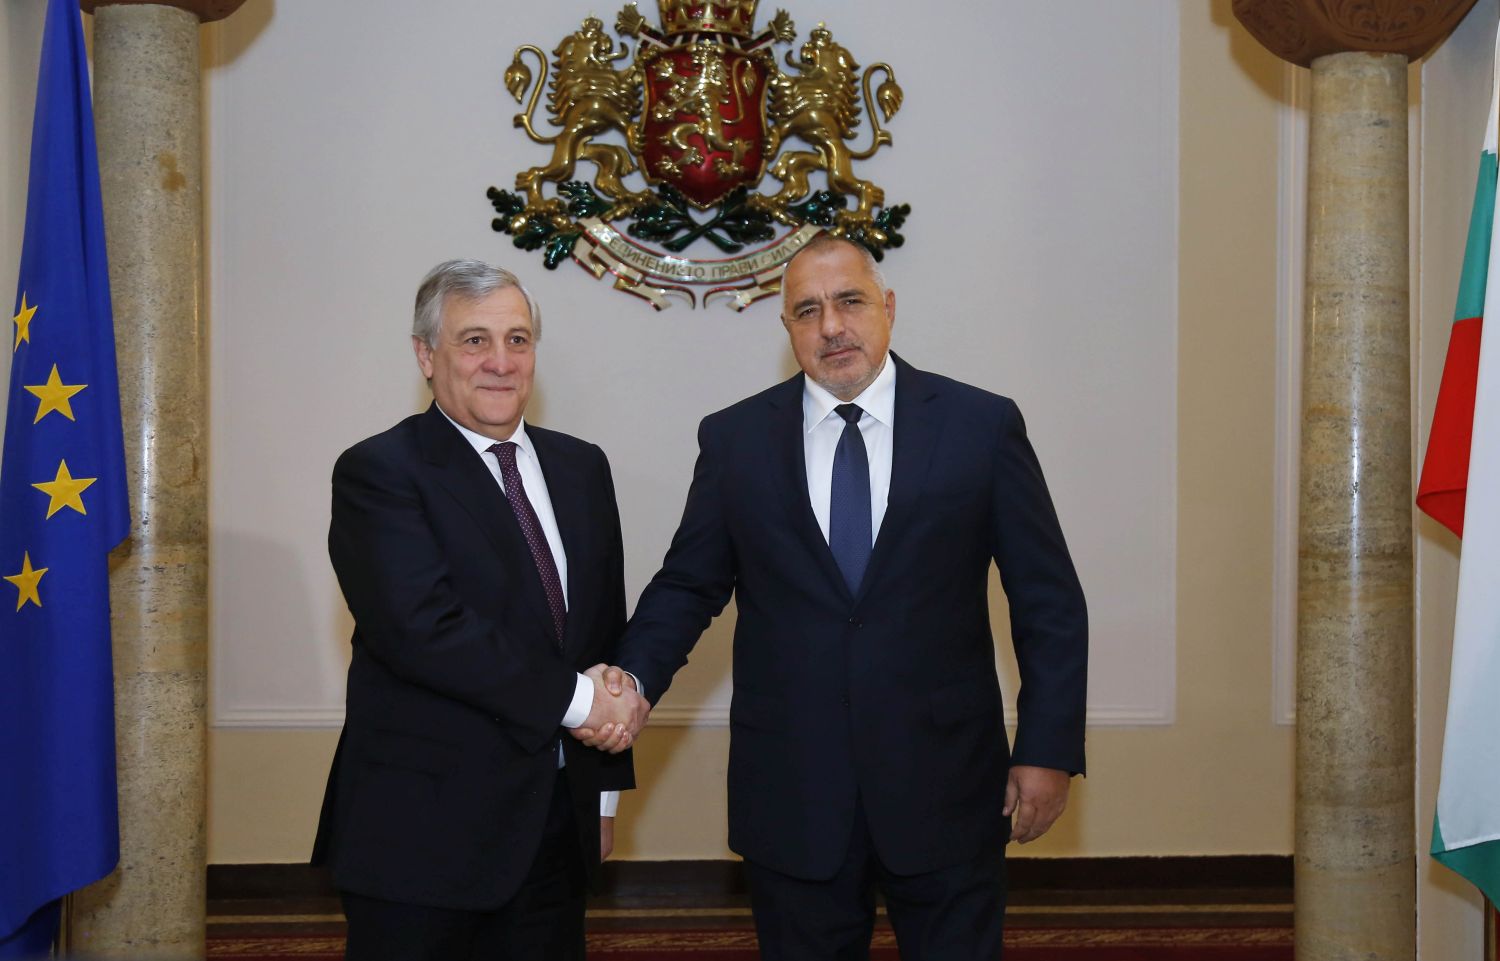 Борисов към Таяни: Българите продължават да вярват в ЕС